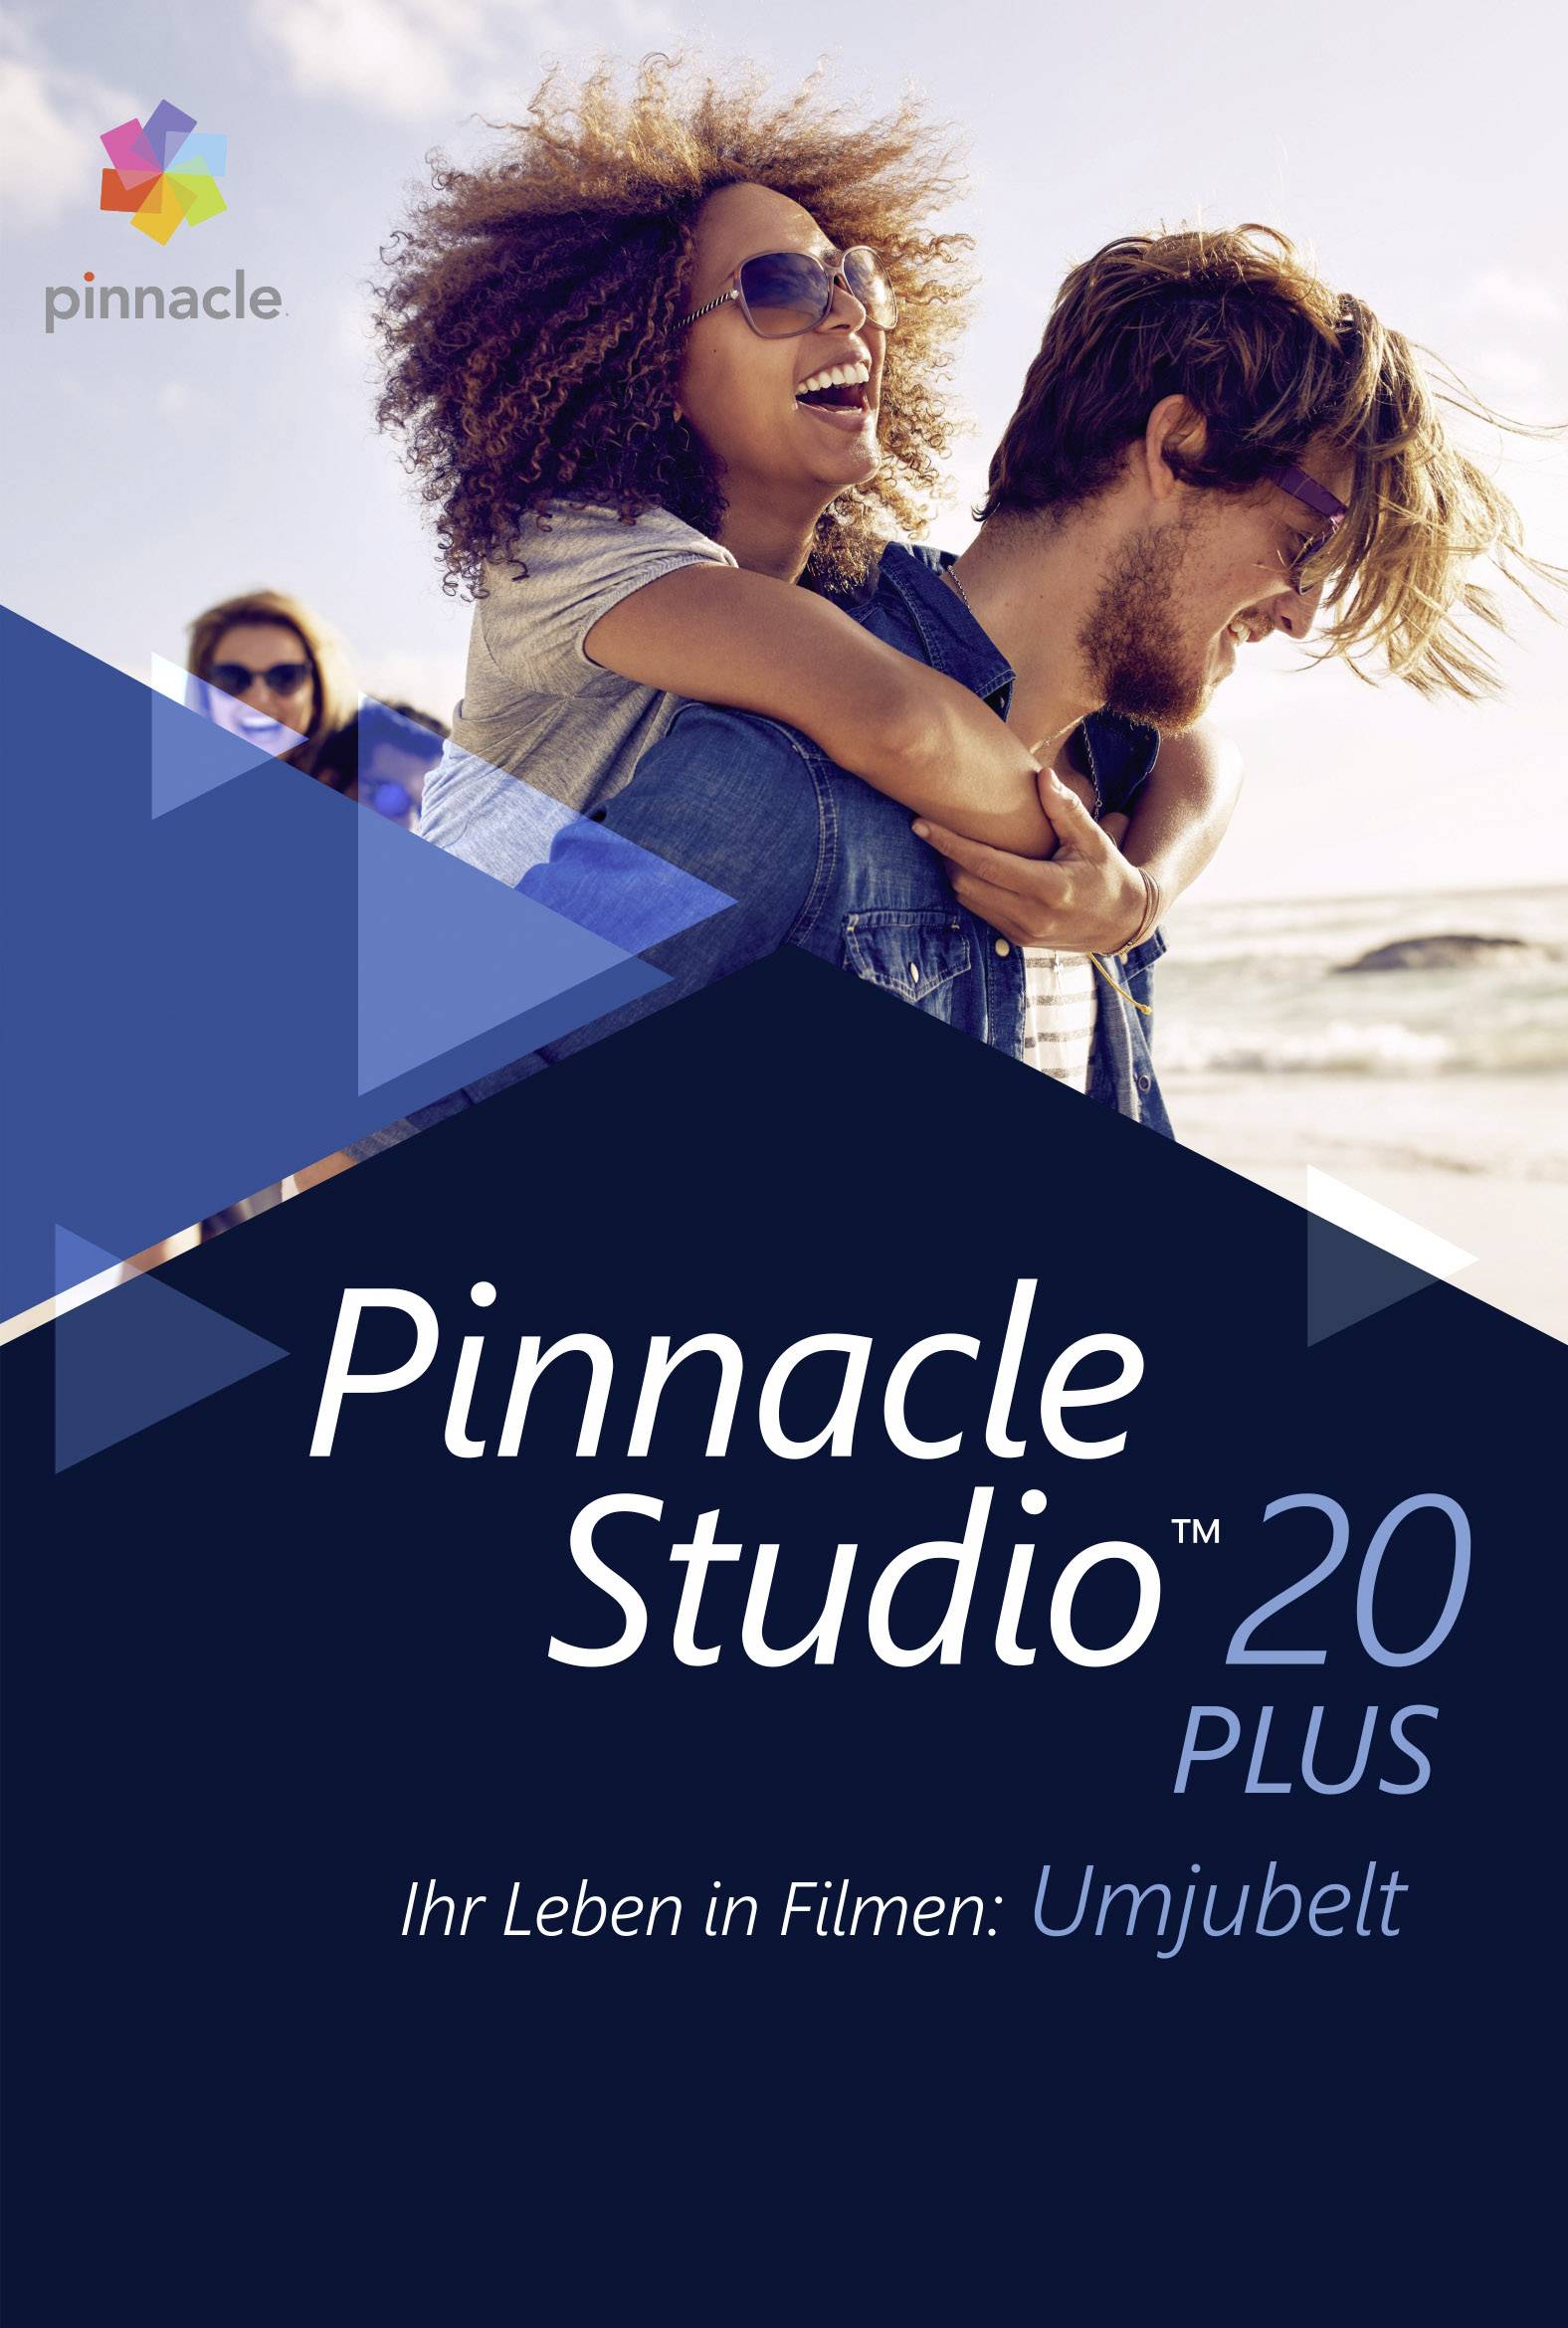 how to edit audio in pinnacle studio 20 ultimate